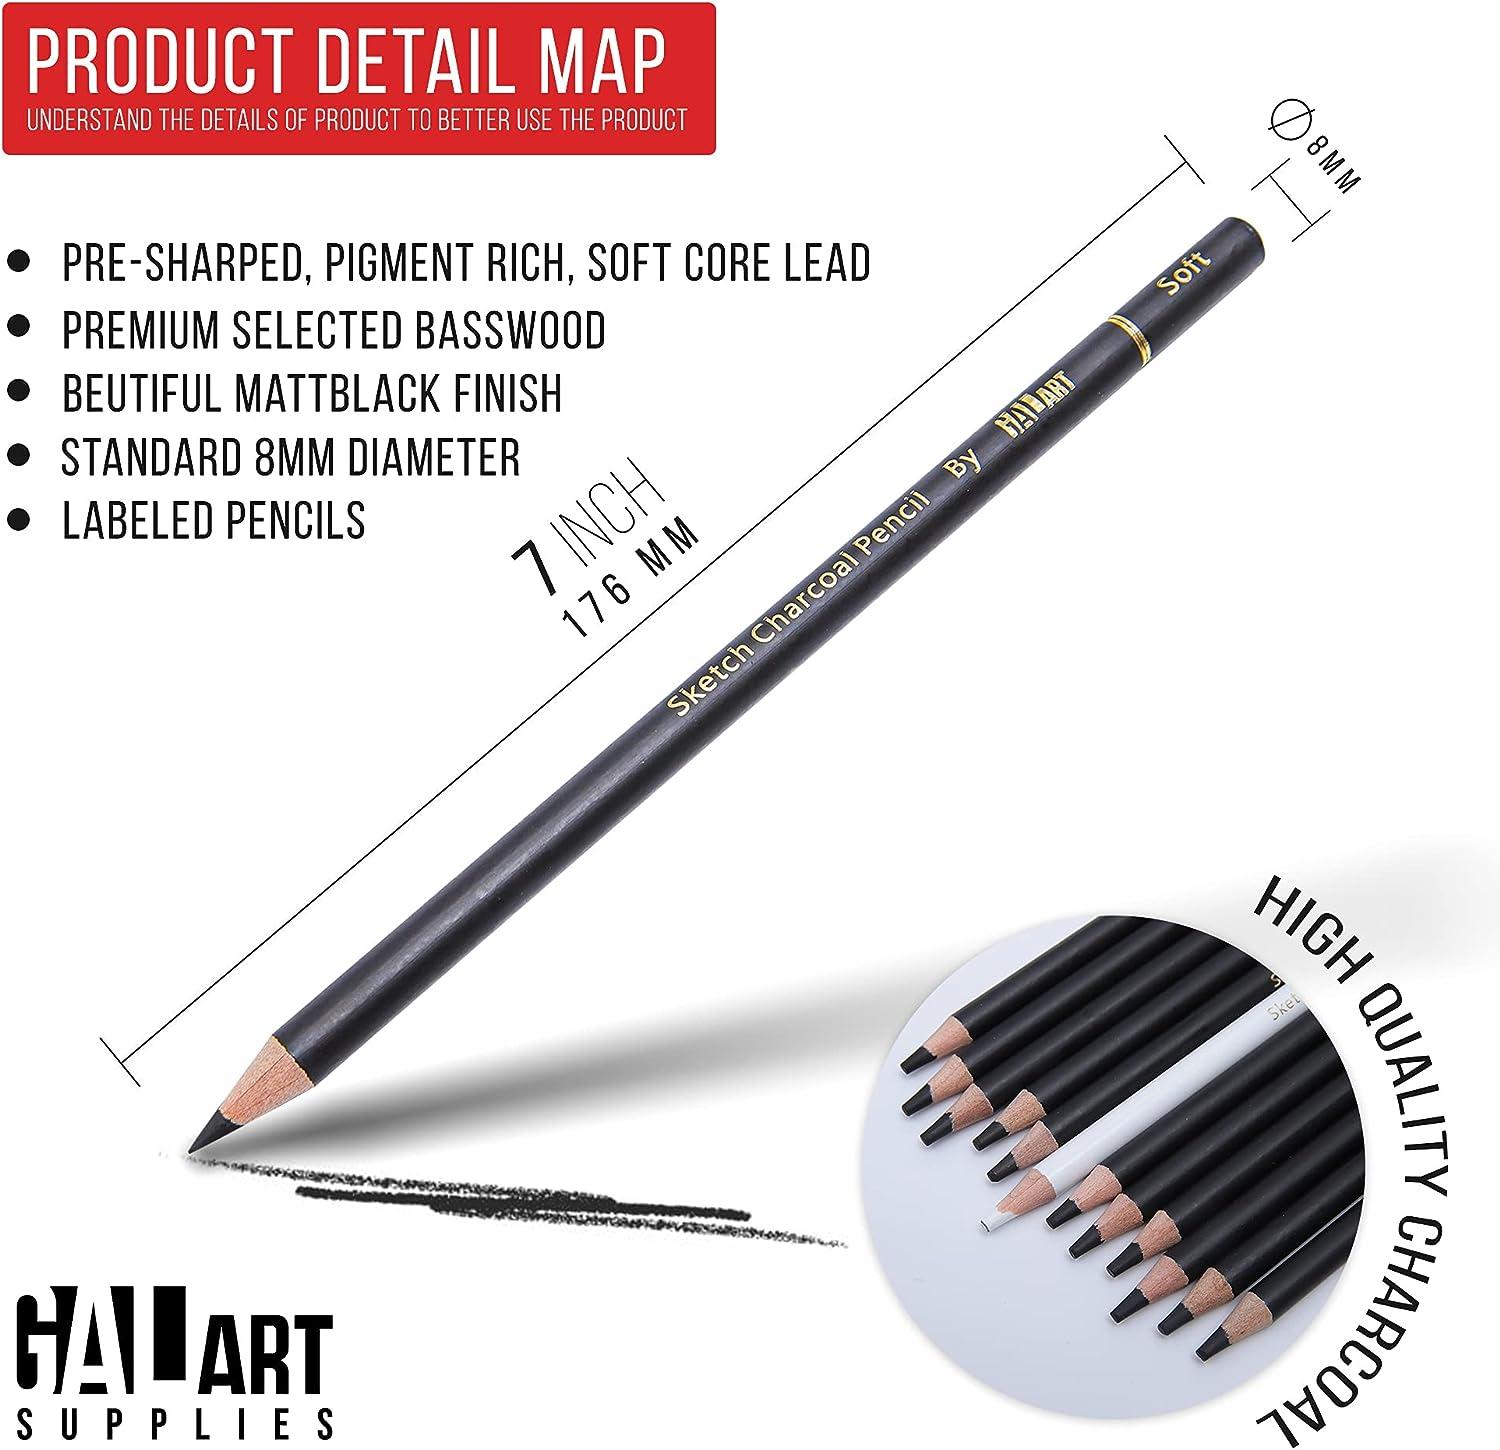 Charcoal Supplies, Charcoal Pencils, Pencil Sketch